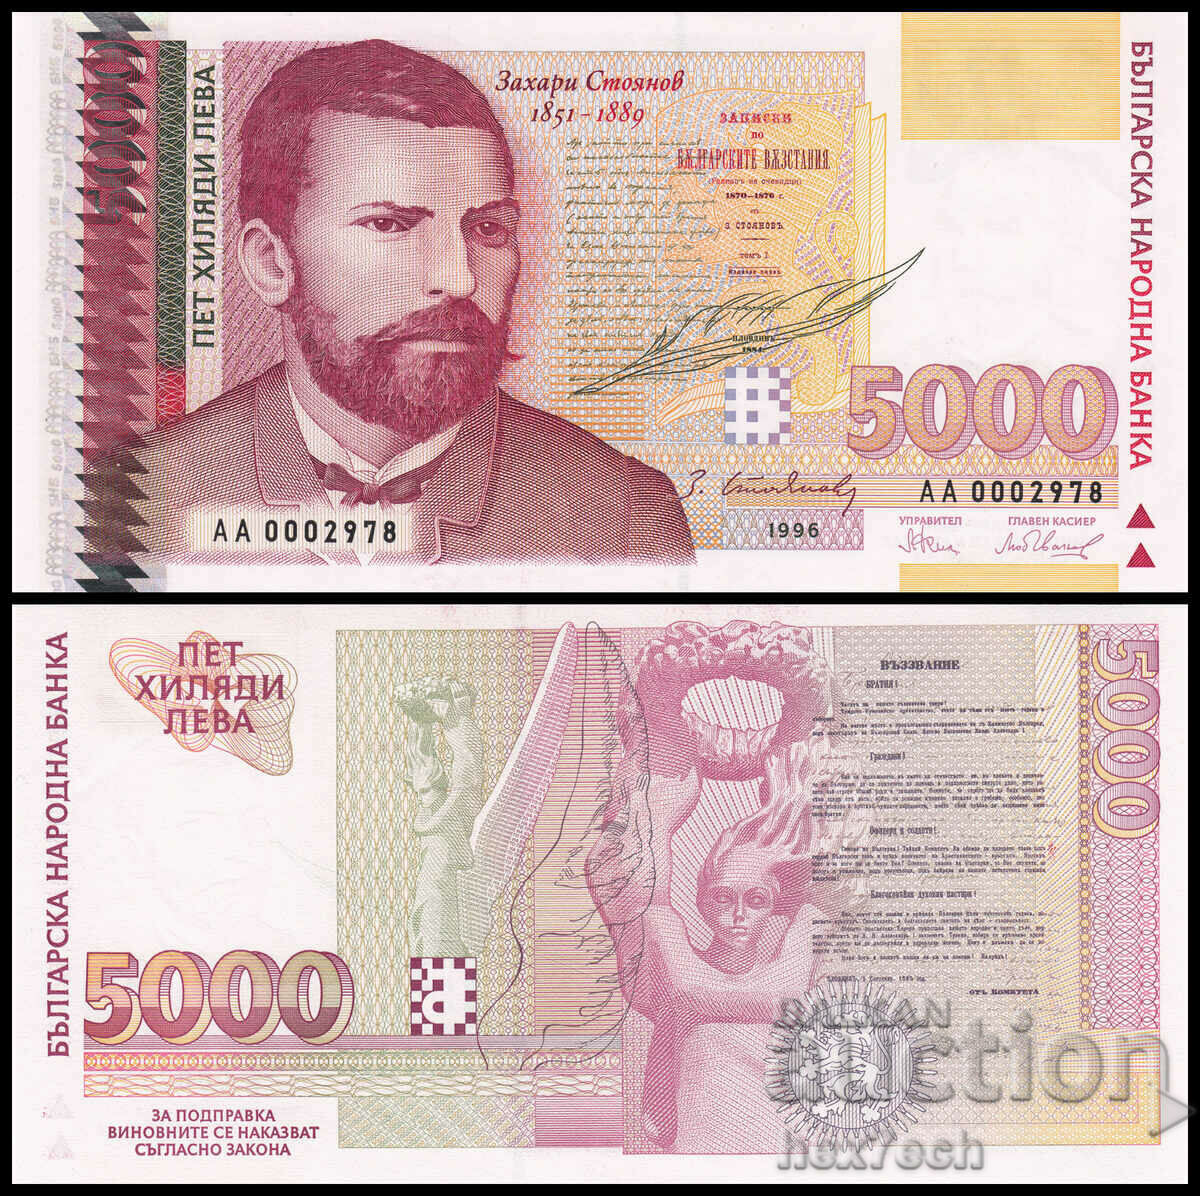 ❤️ ⭐ Βουλγαρία 1996 5000 BGN UNC νέο ⭐ ❤️